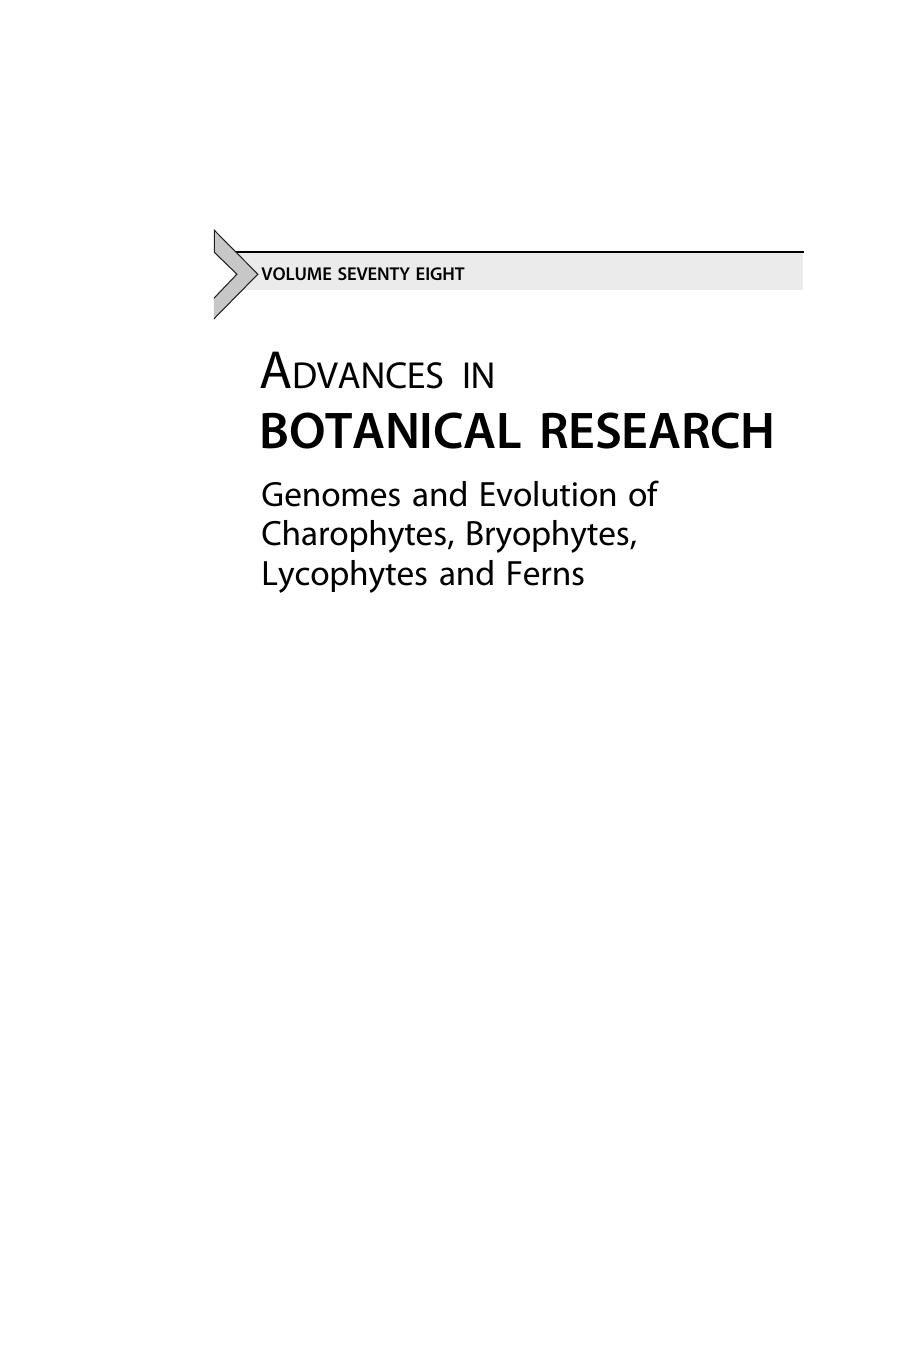 Genomes and Evolution of Charophytes, Bryophytes, Lycophytes and Ferns Vol 78 2016 ( PDFDrive.com )